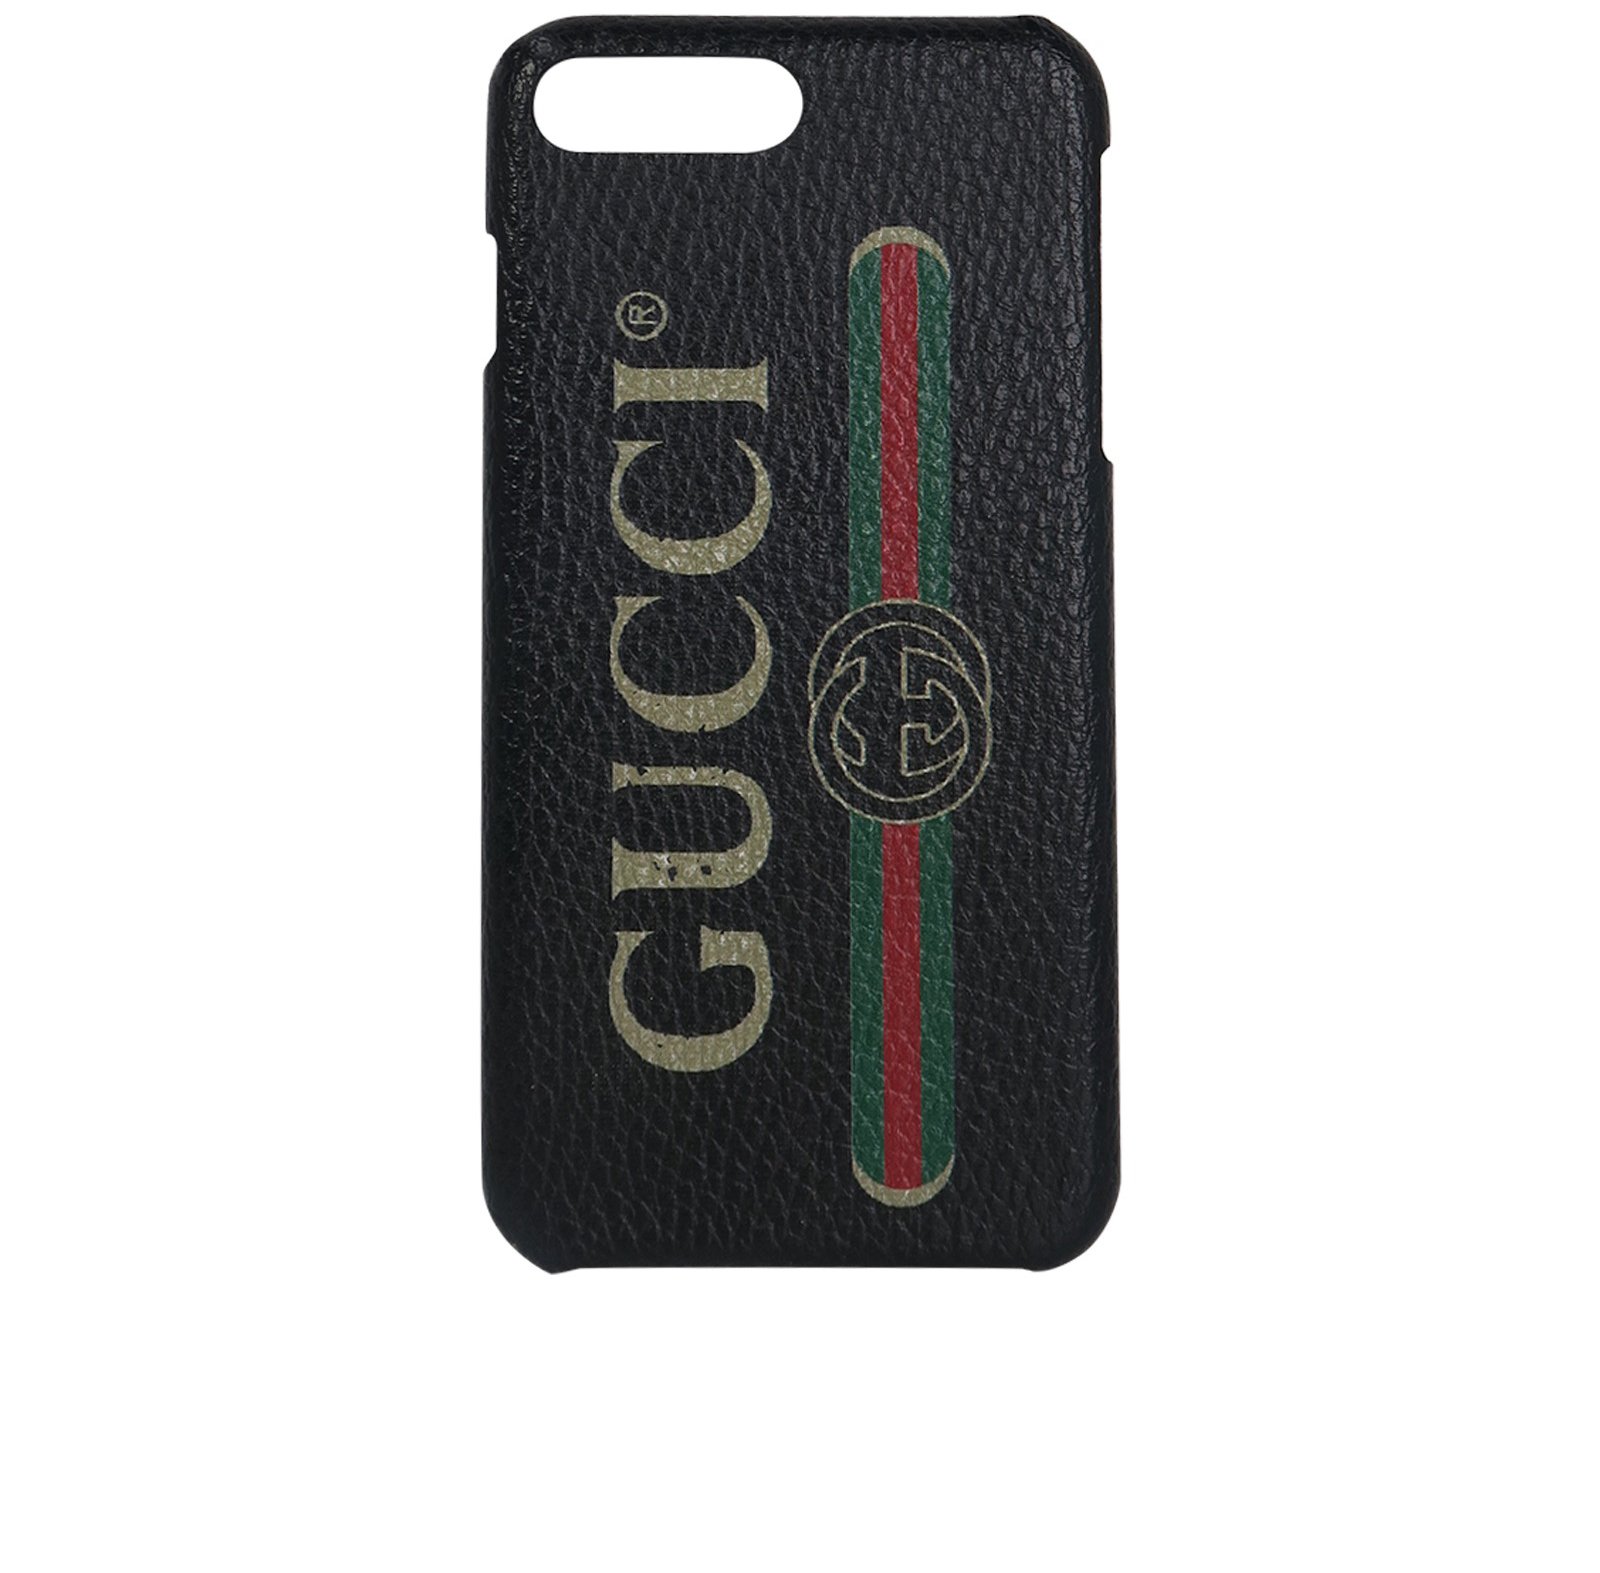 Gucci Phone case clear iPhone 8 plus Case Gucci iPhone 8 Case